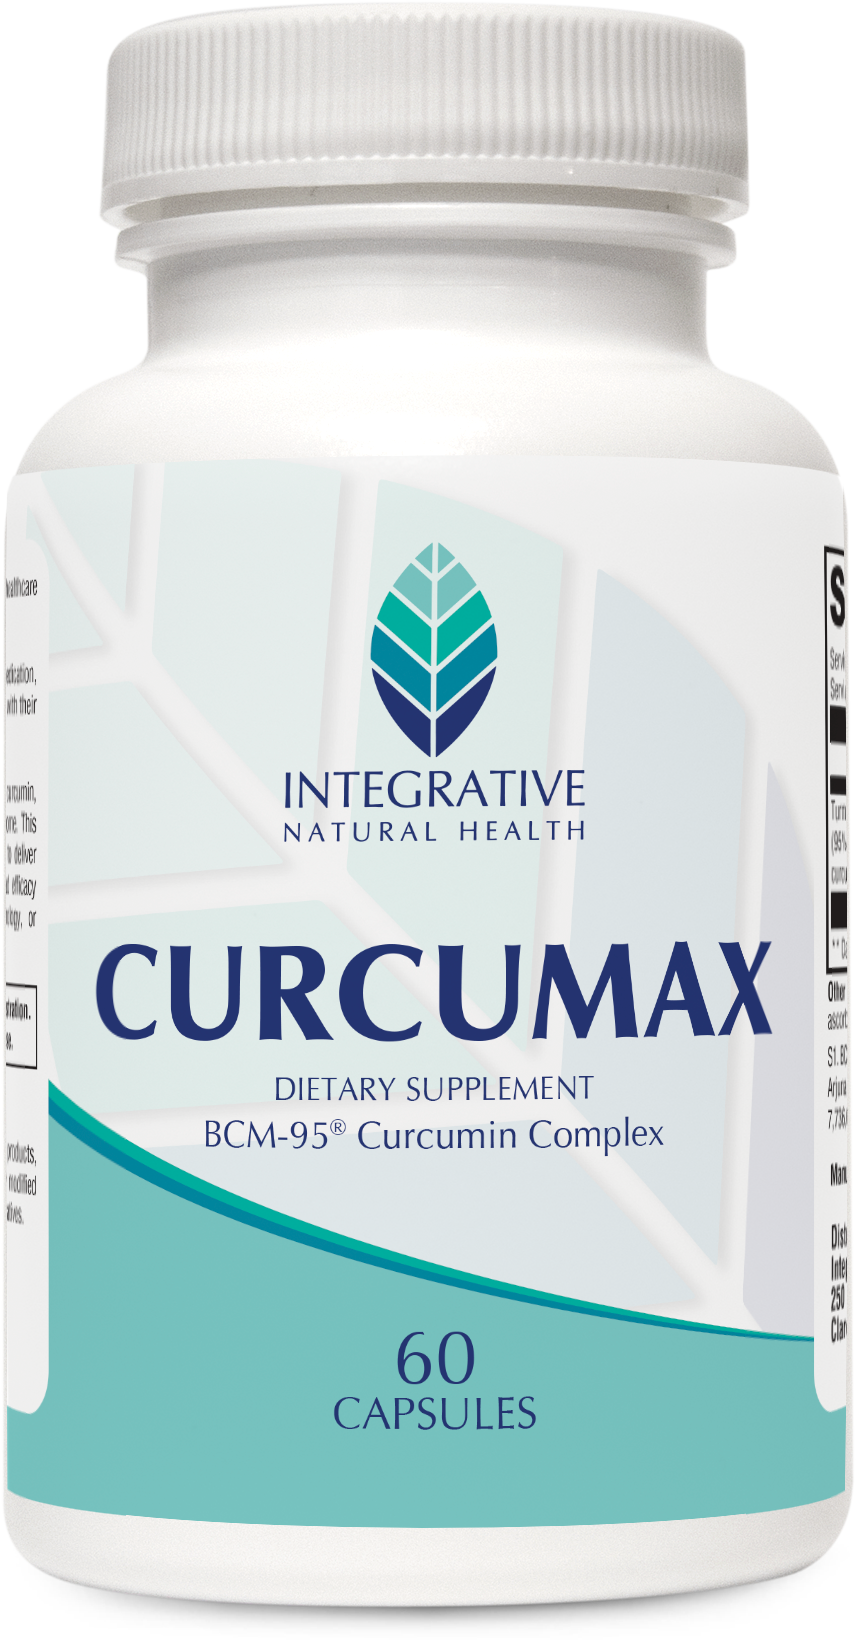 CurcuMax